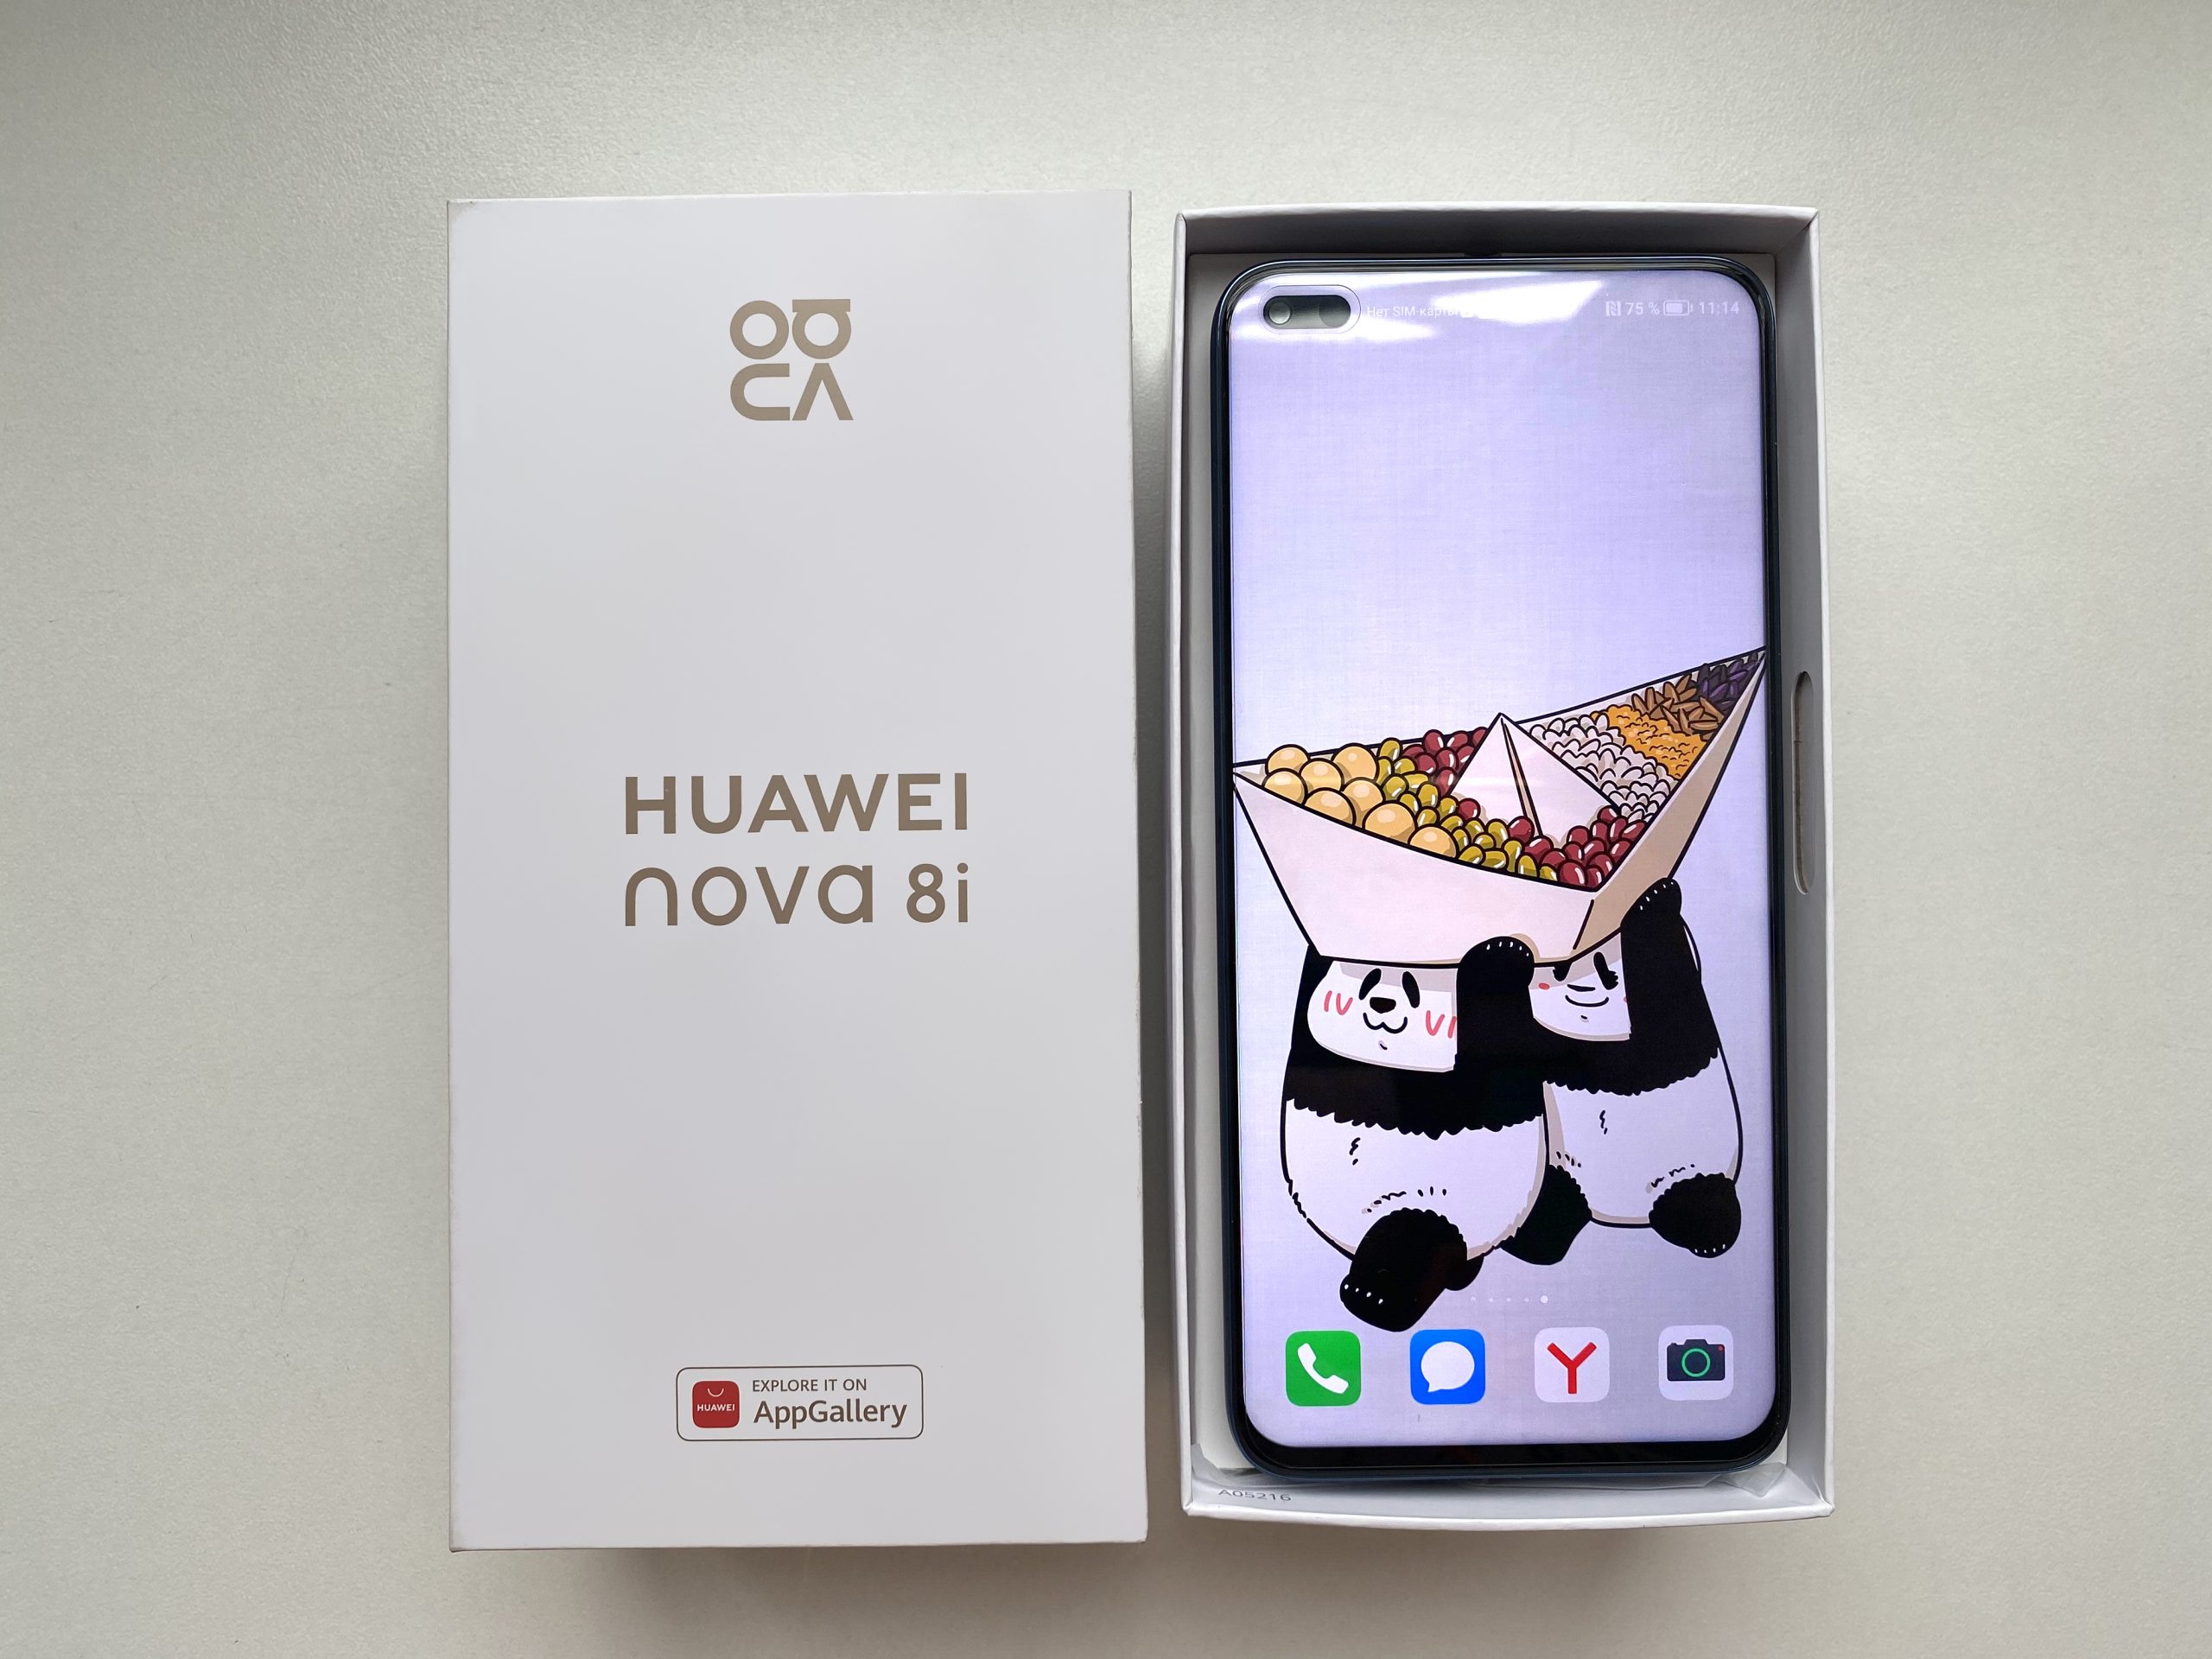 Вкусный обзор. Готовим Huawei nova 8i в китайском самоваре Хого!